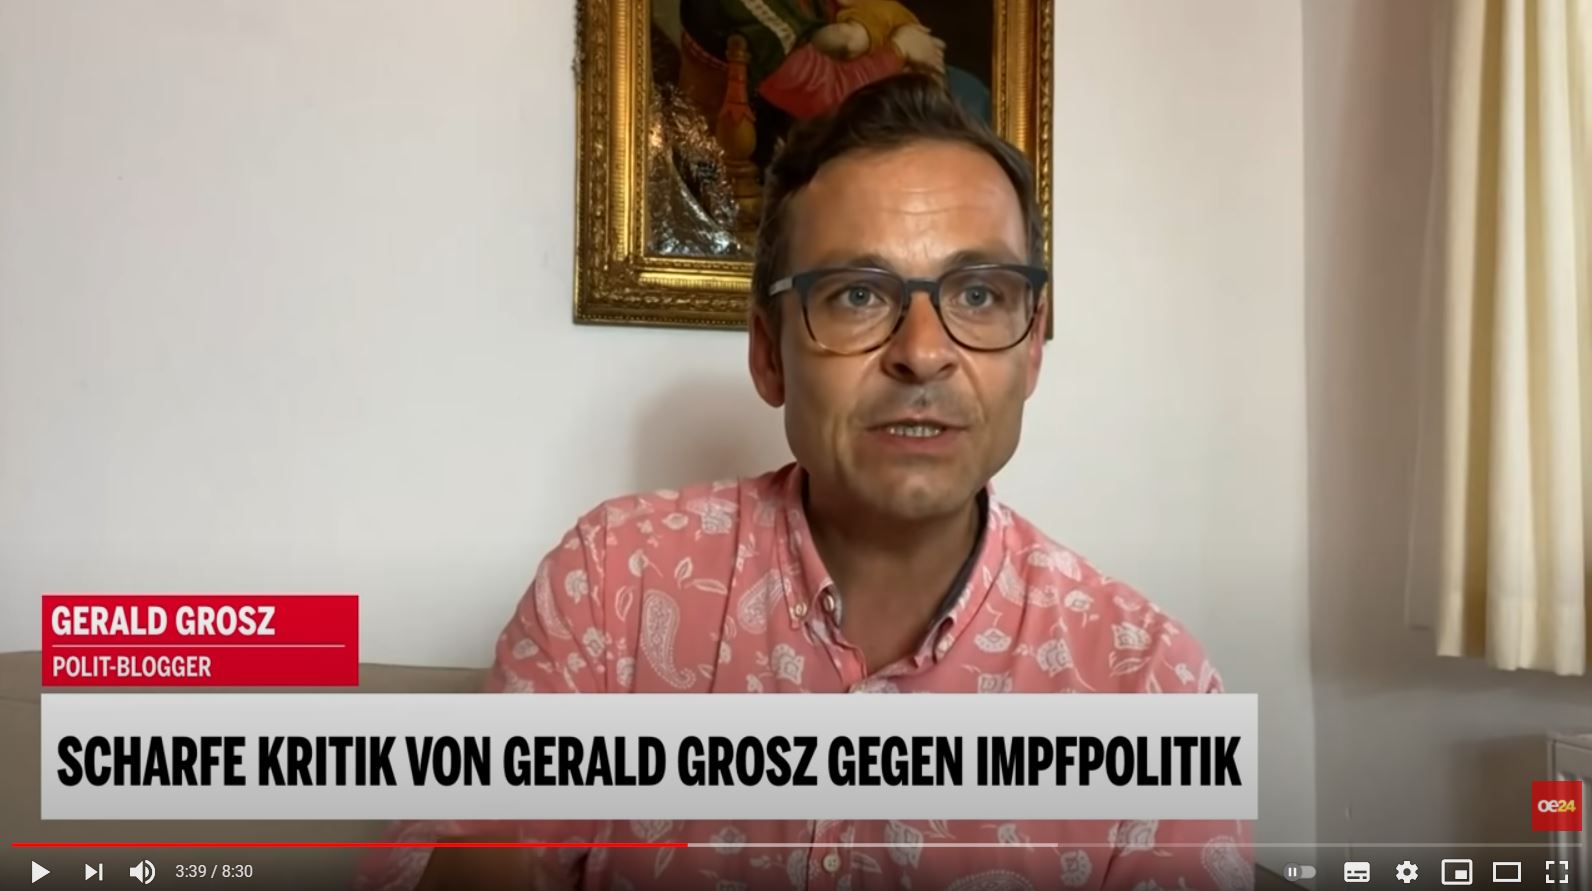 Scharfe Kritik von Gerald Grosz gegen Impfpolitik